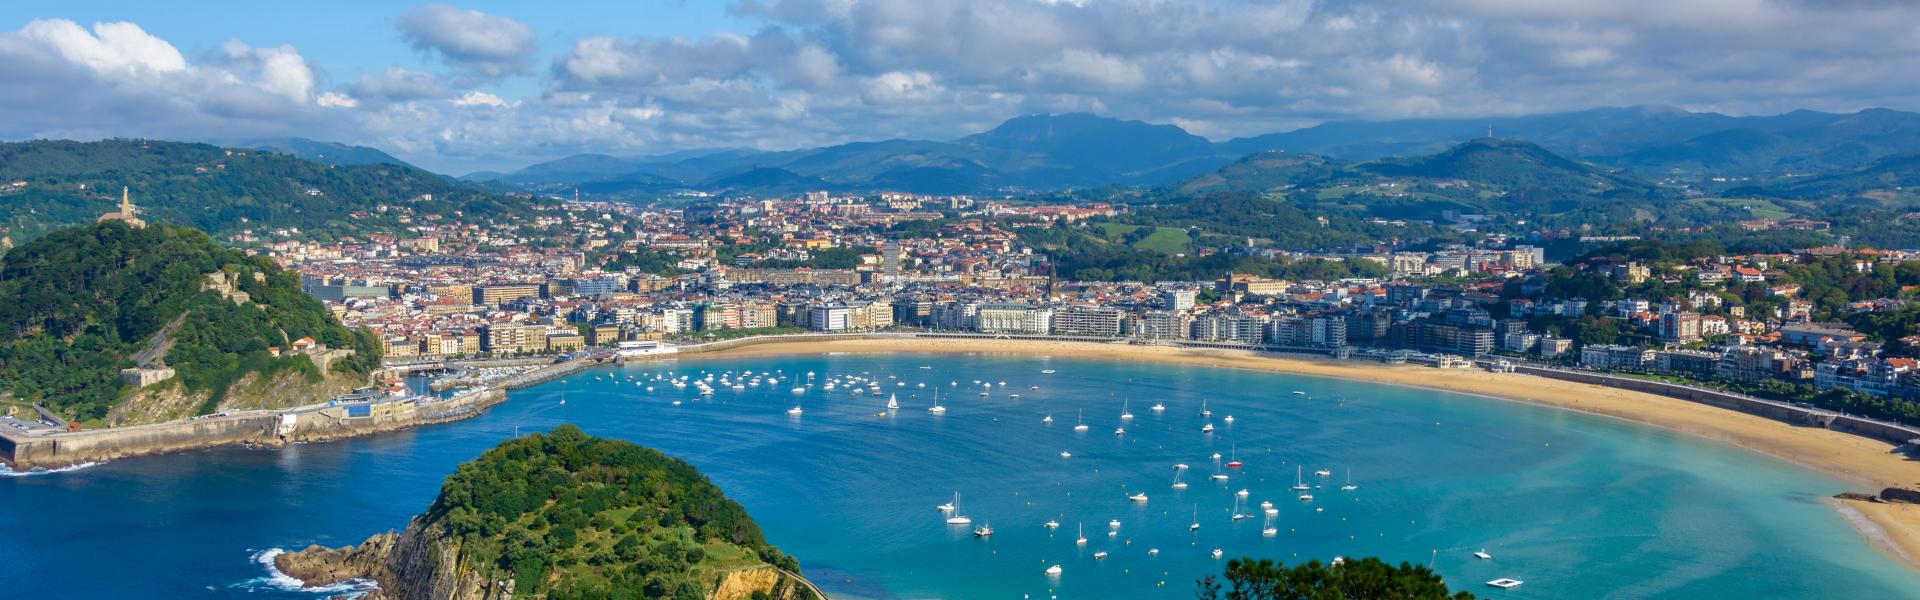 Baskien har ett av spännande kulturellt arv för för den som inte bara vill ligga på stranden - Casamundo